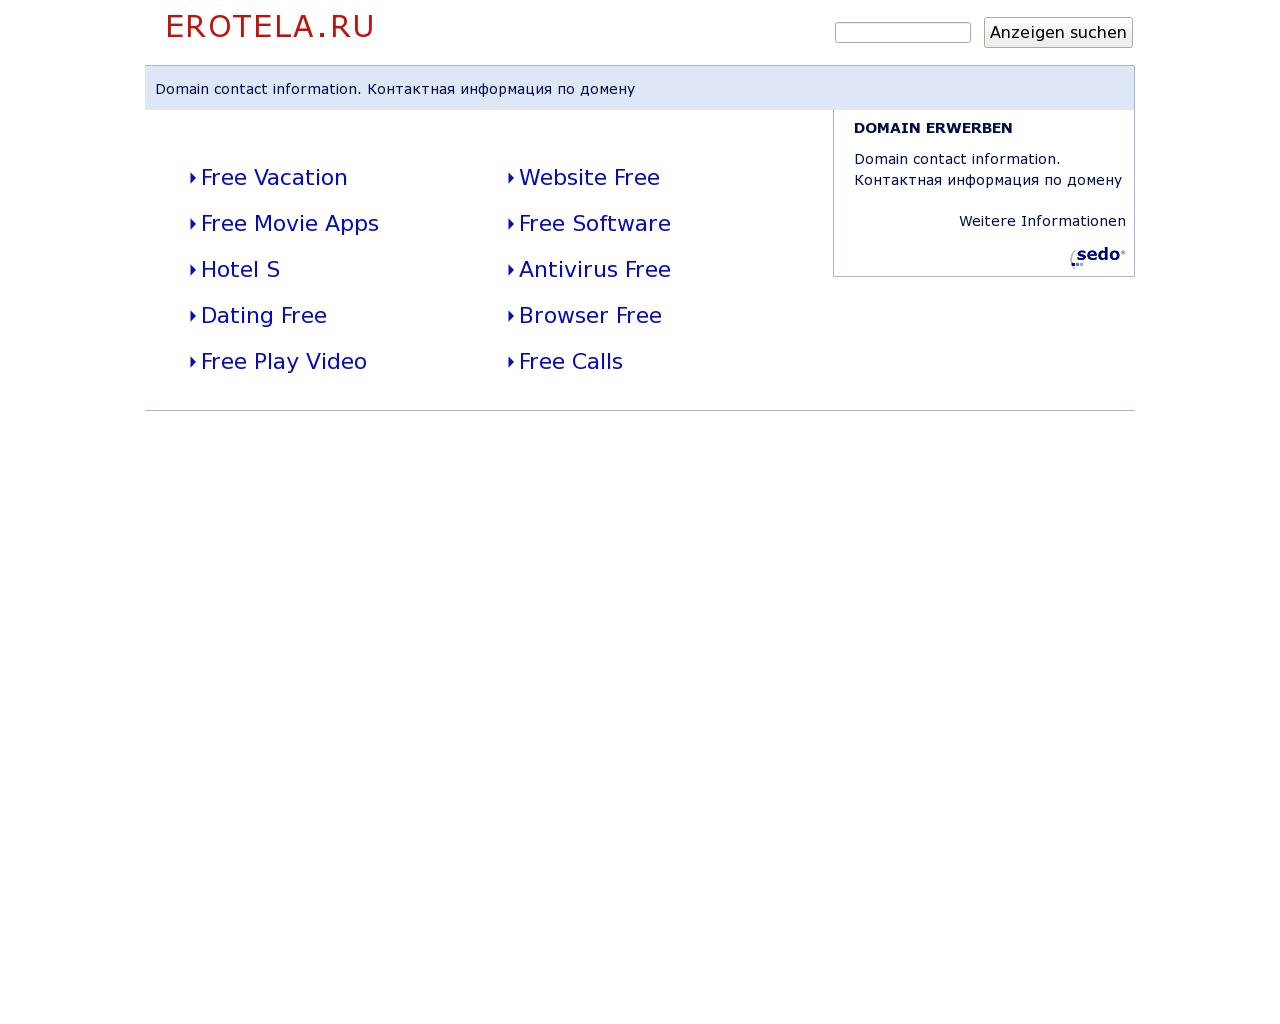 Изображение сайта erotela.ru в разрешении 1280x1024